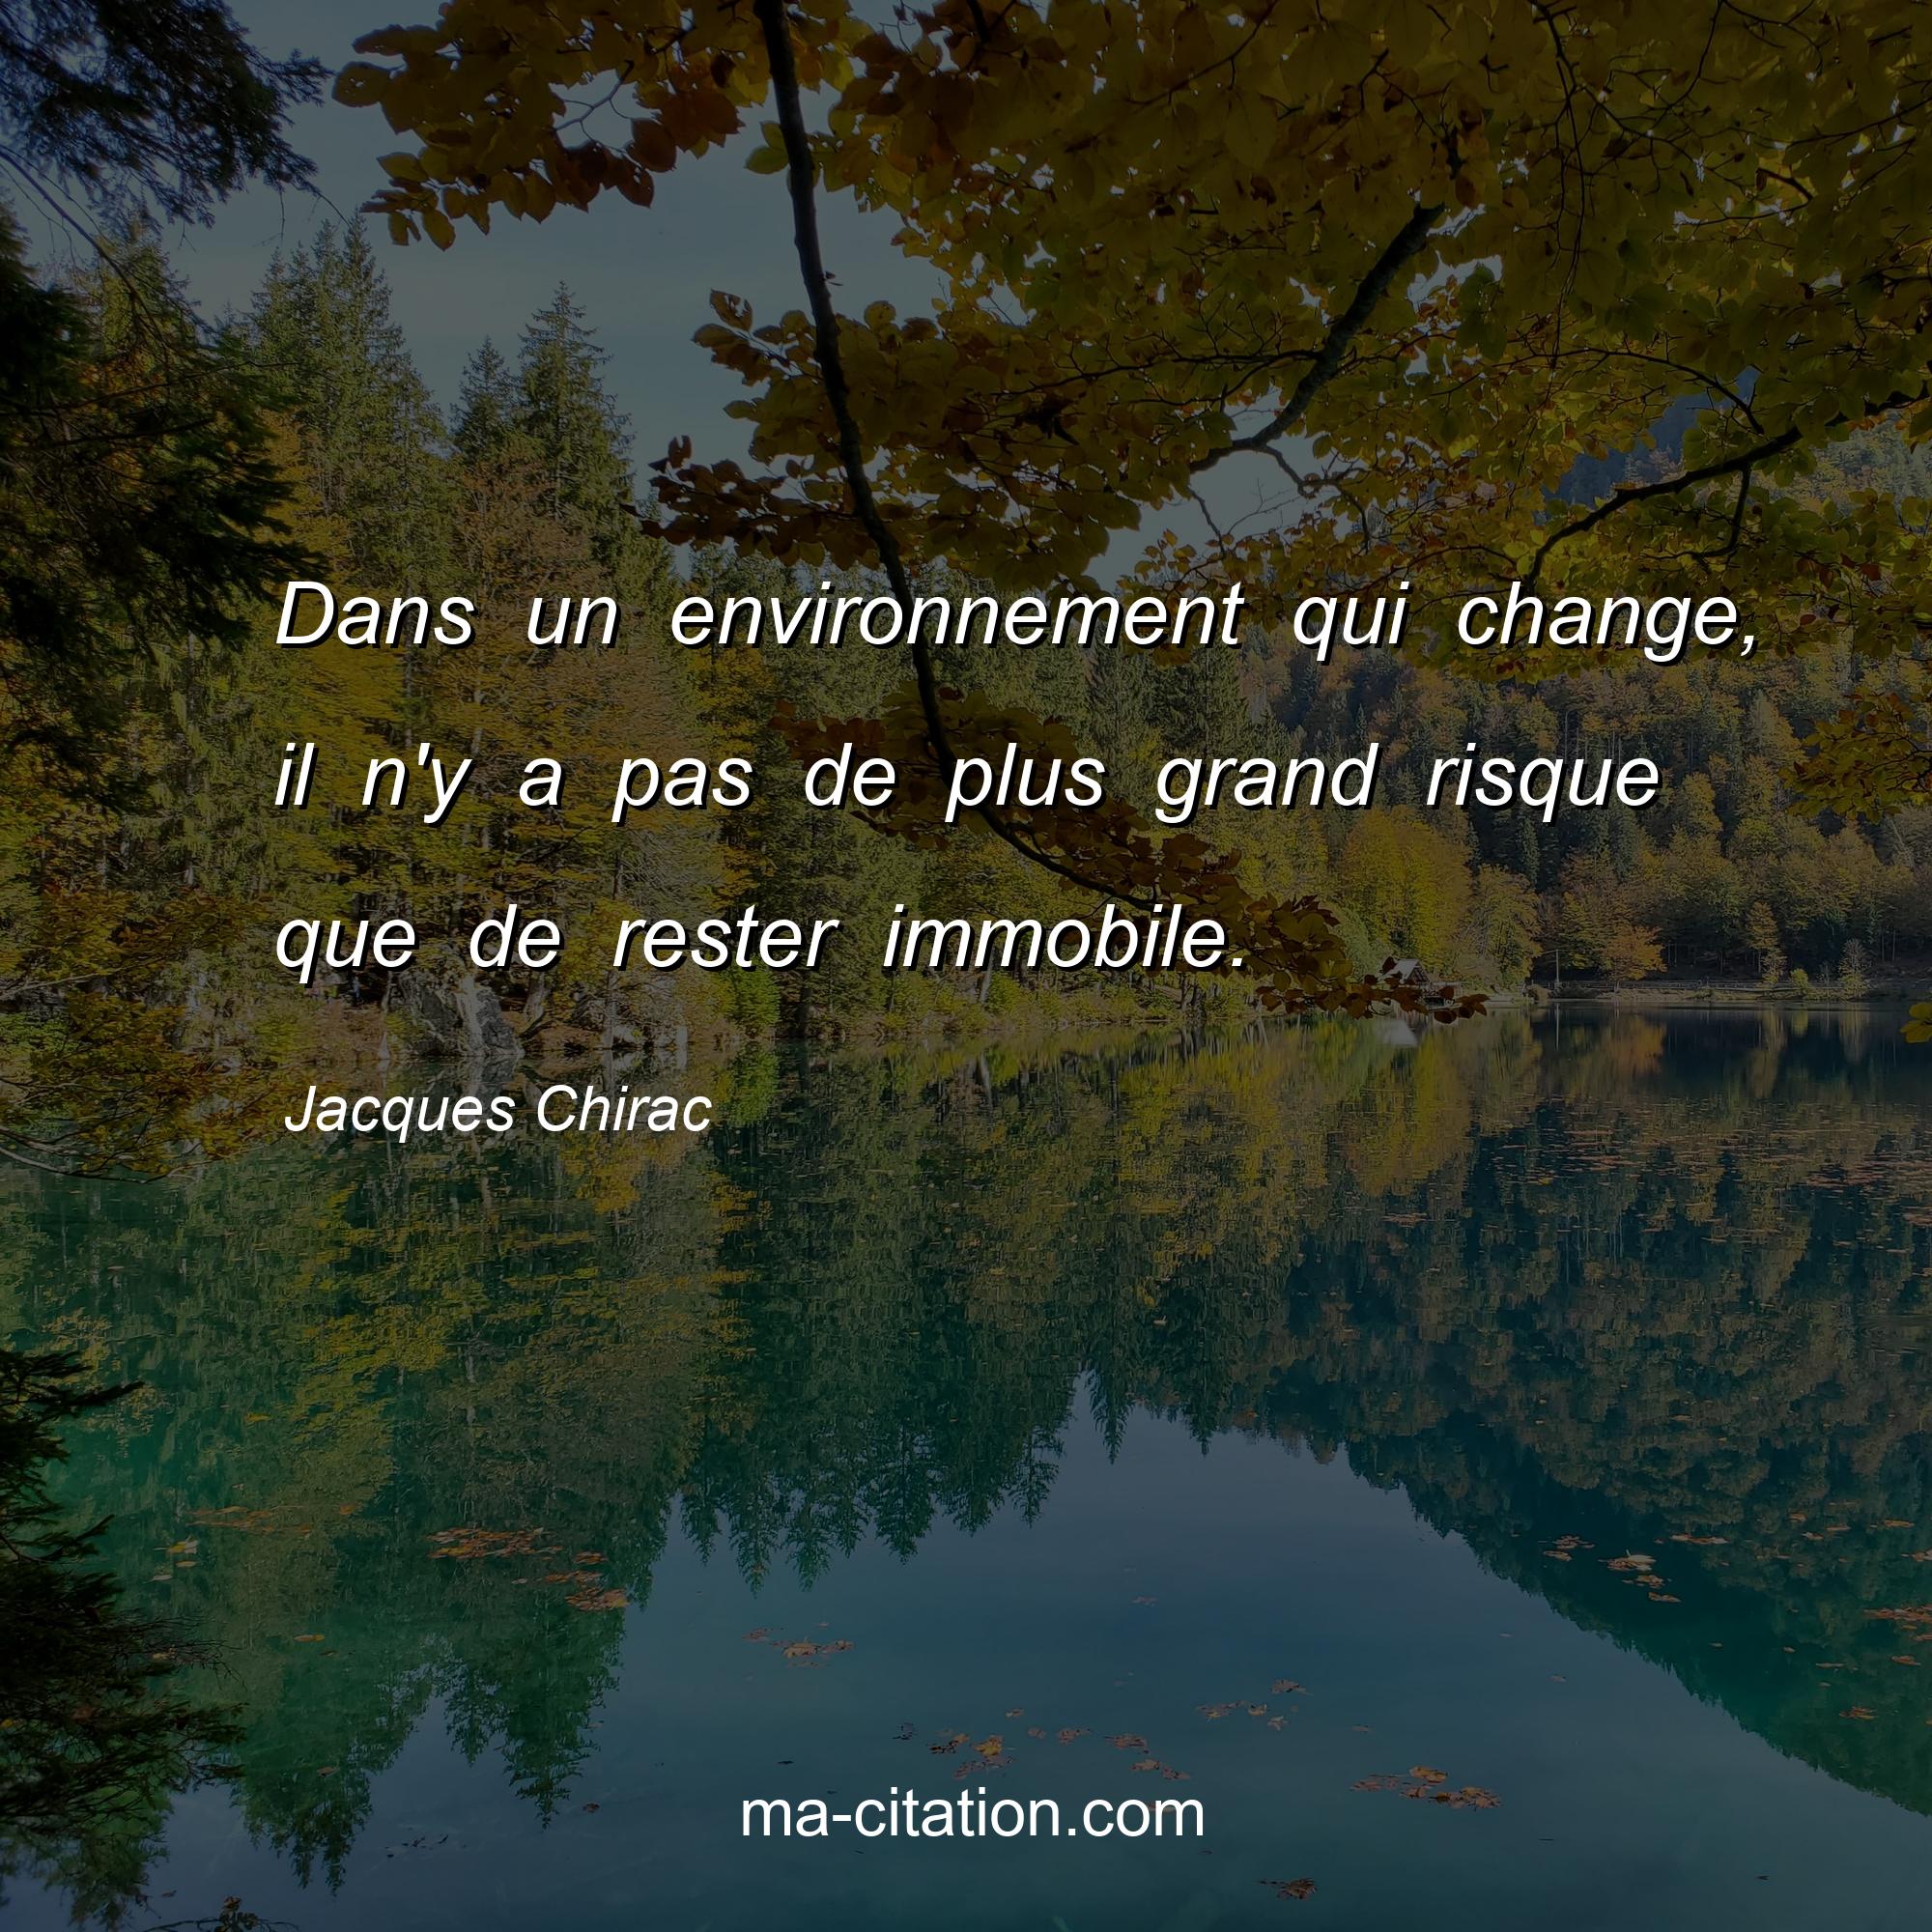 Jacques Chirac : Dans un environnement qui change, il n'y a pas de plus grand risque que de rester immobile.